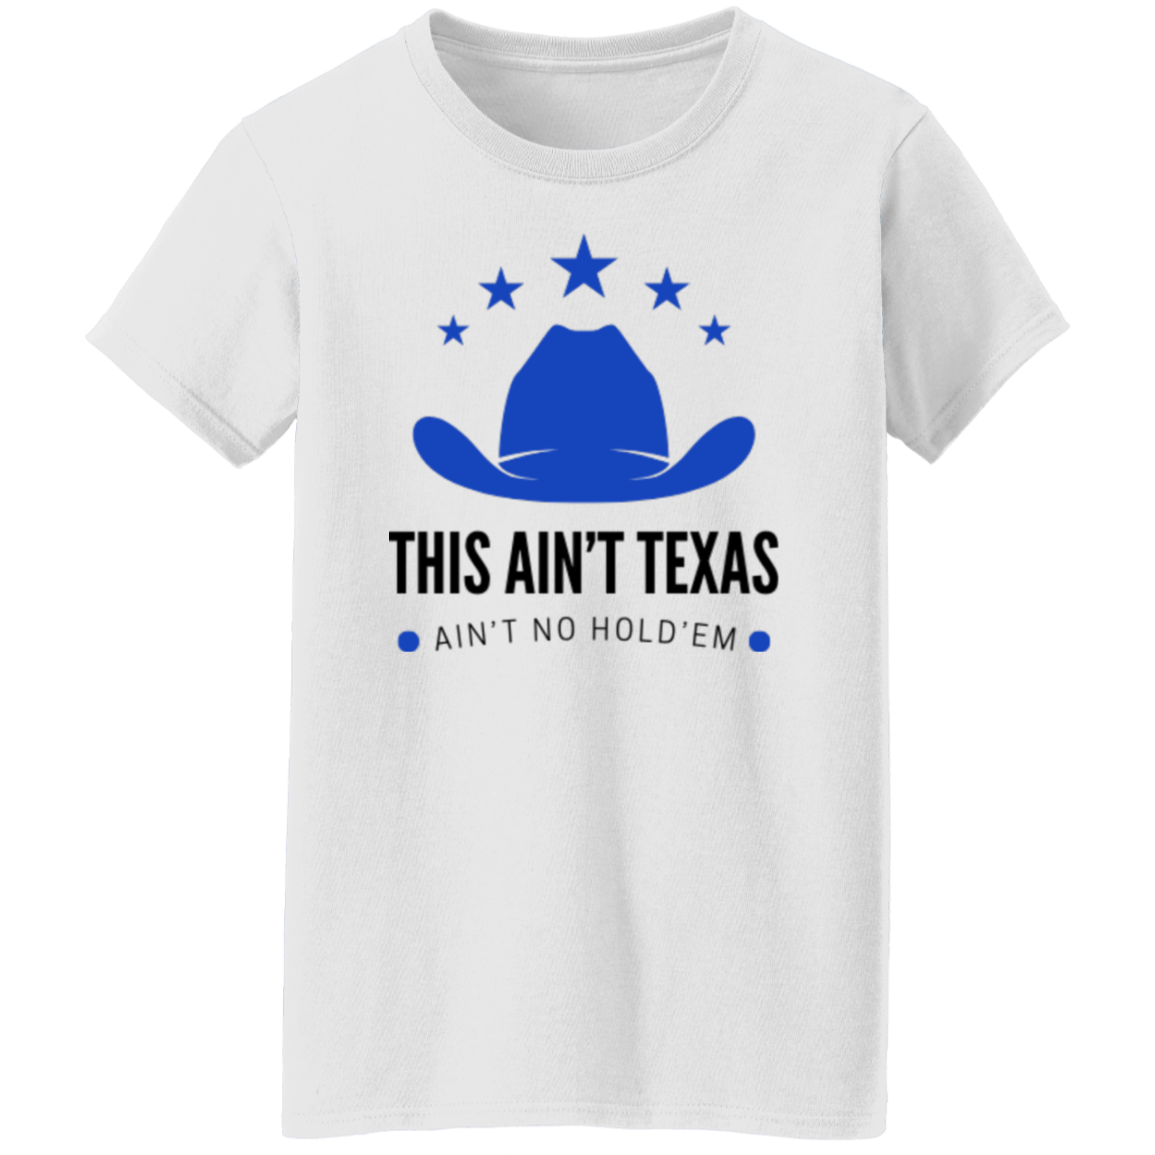 This Ain't Texas T-Shirt